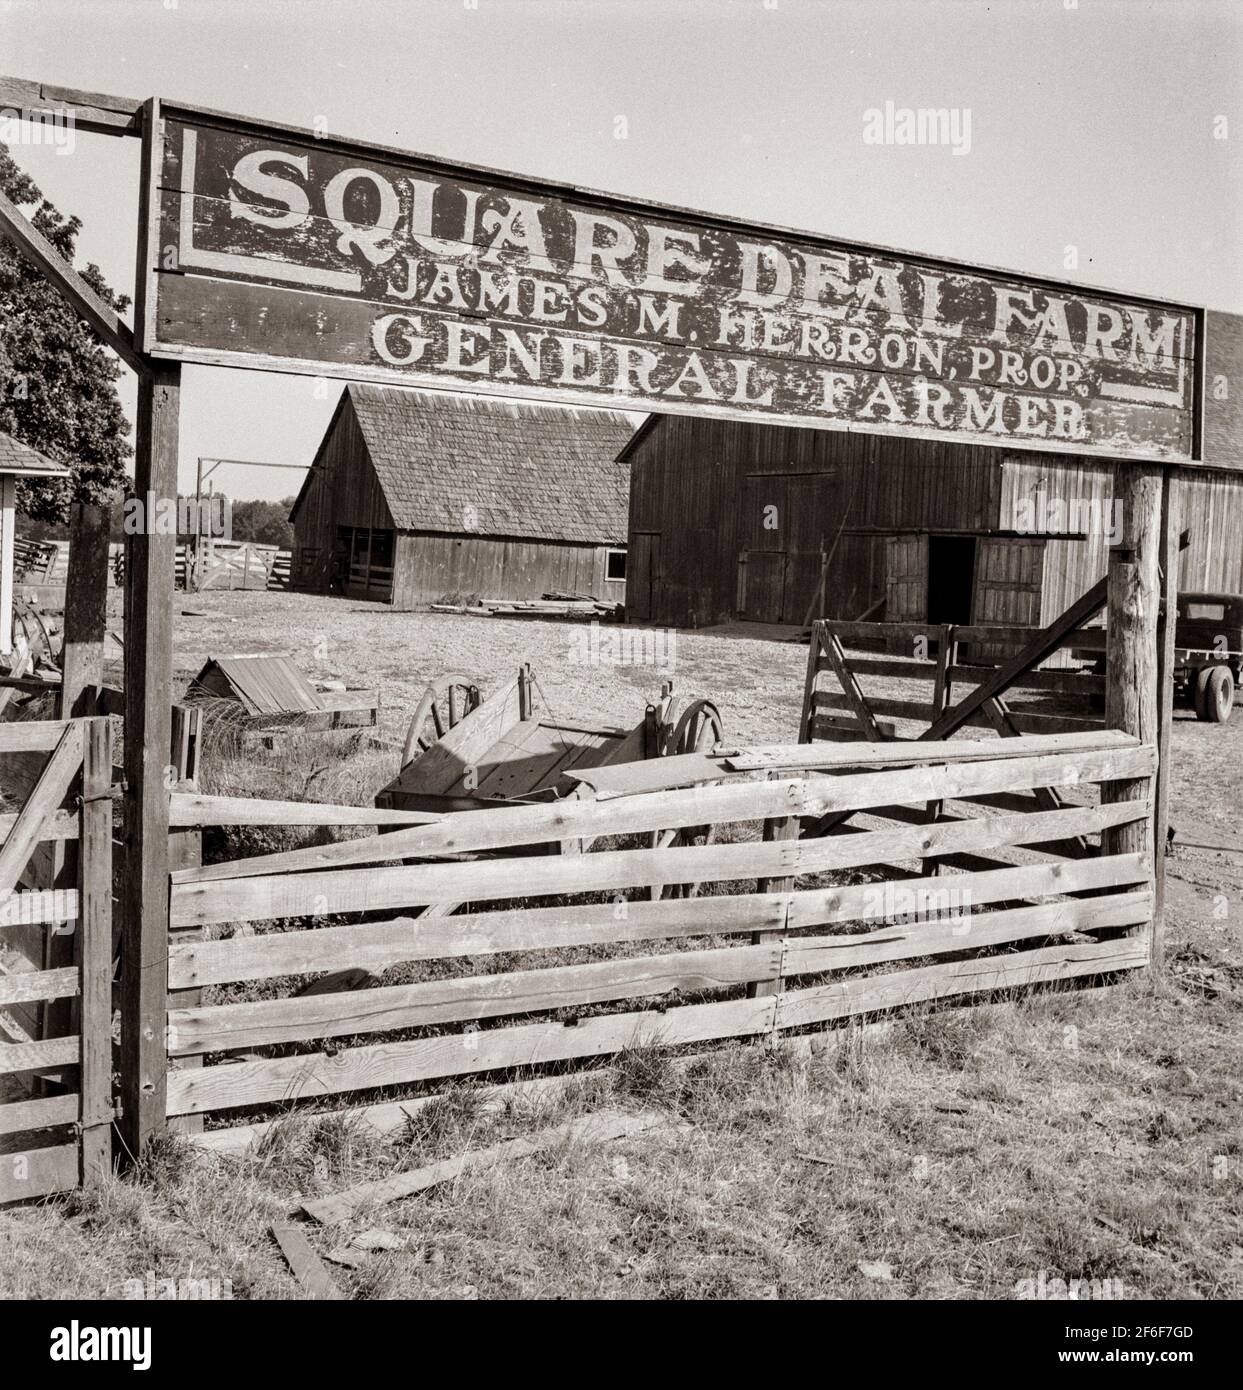 Porta della fattoria Square Deal. Negli Stati Uniti 99. Benton County, Oregon, Williamette Valley. 1939. Fotografia di Dorotea Lange. Foto Stock